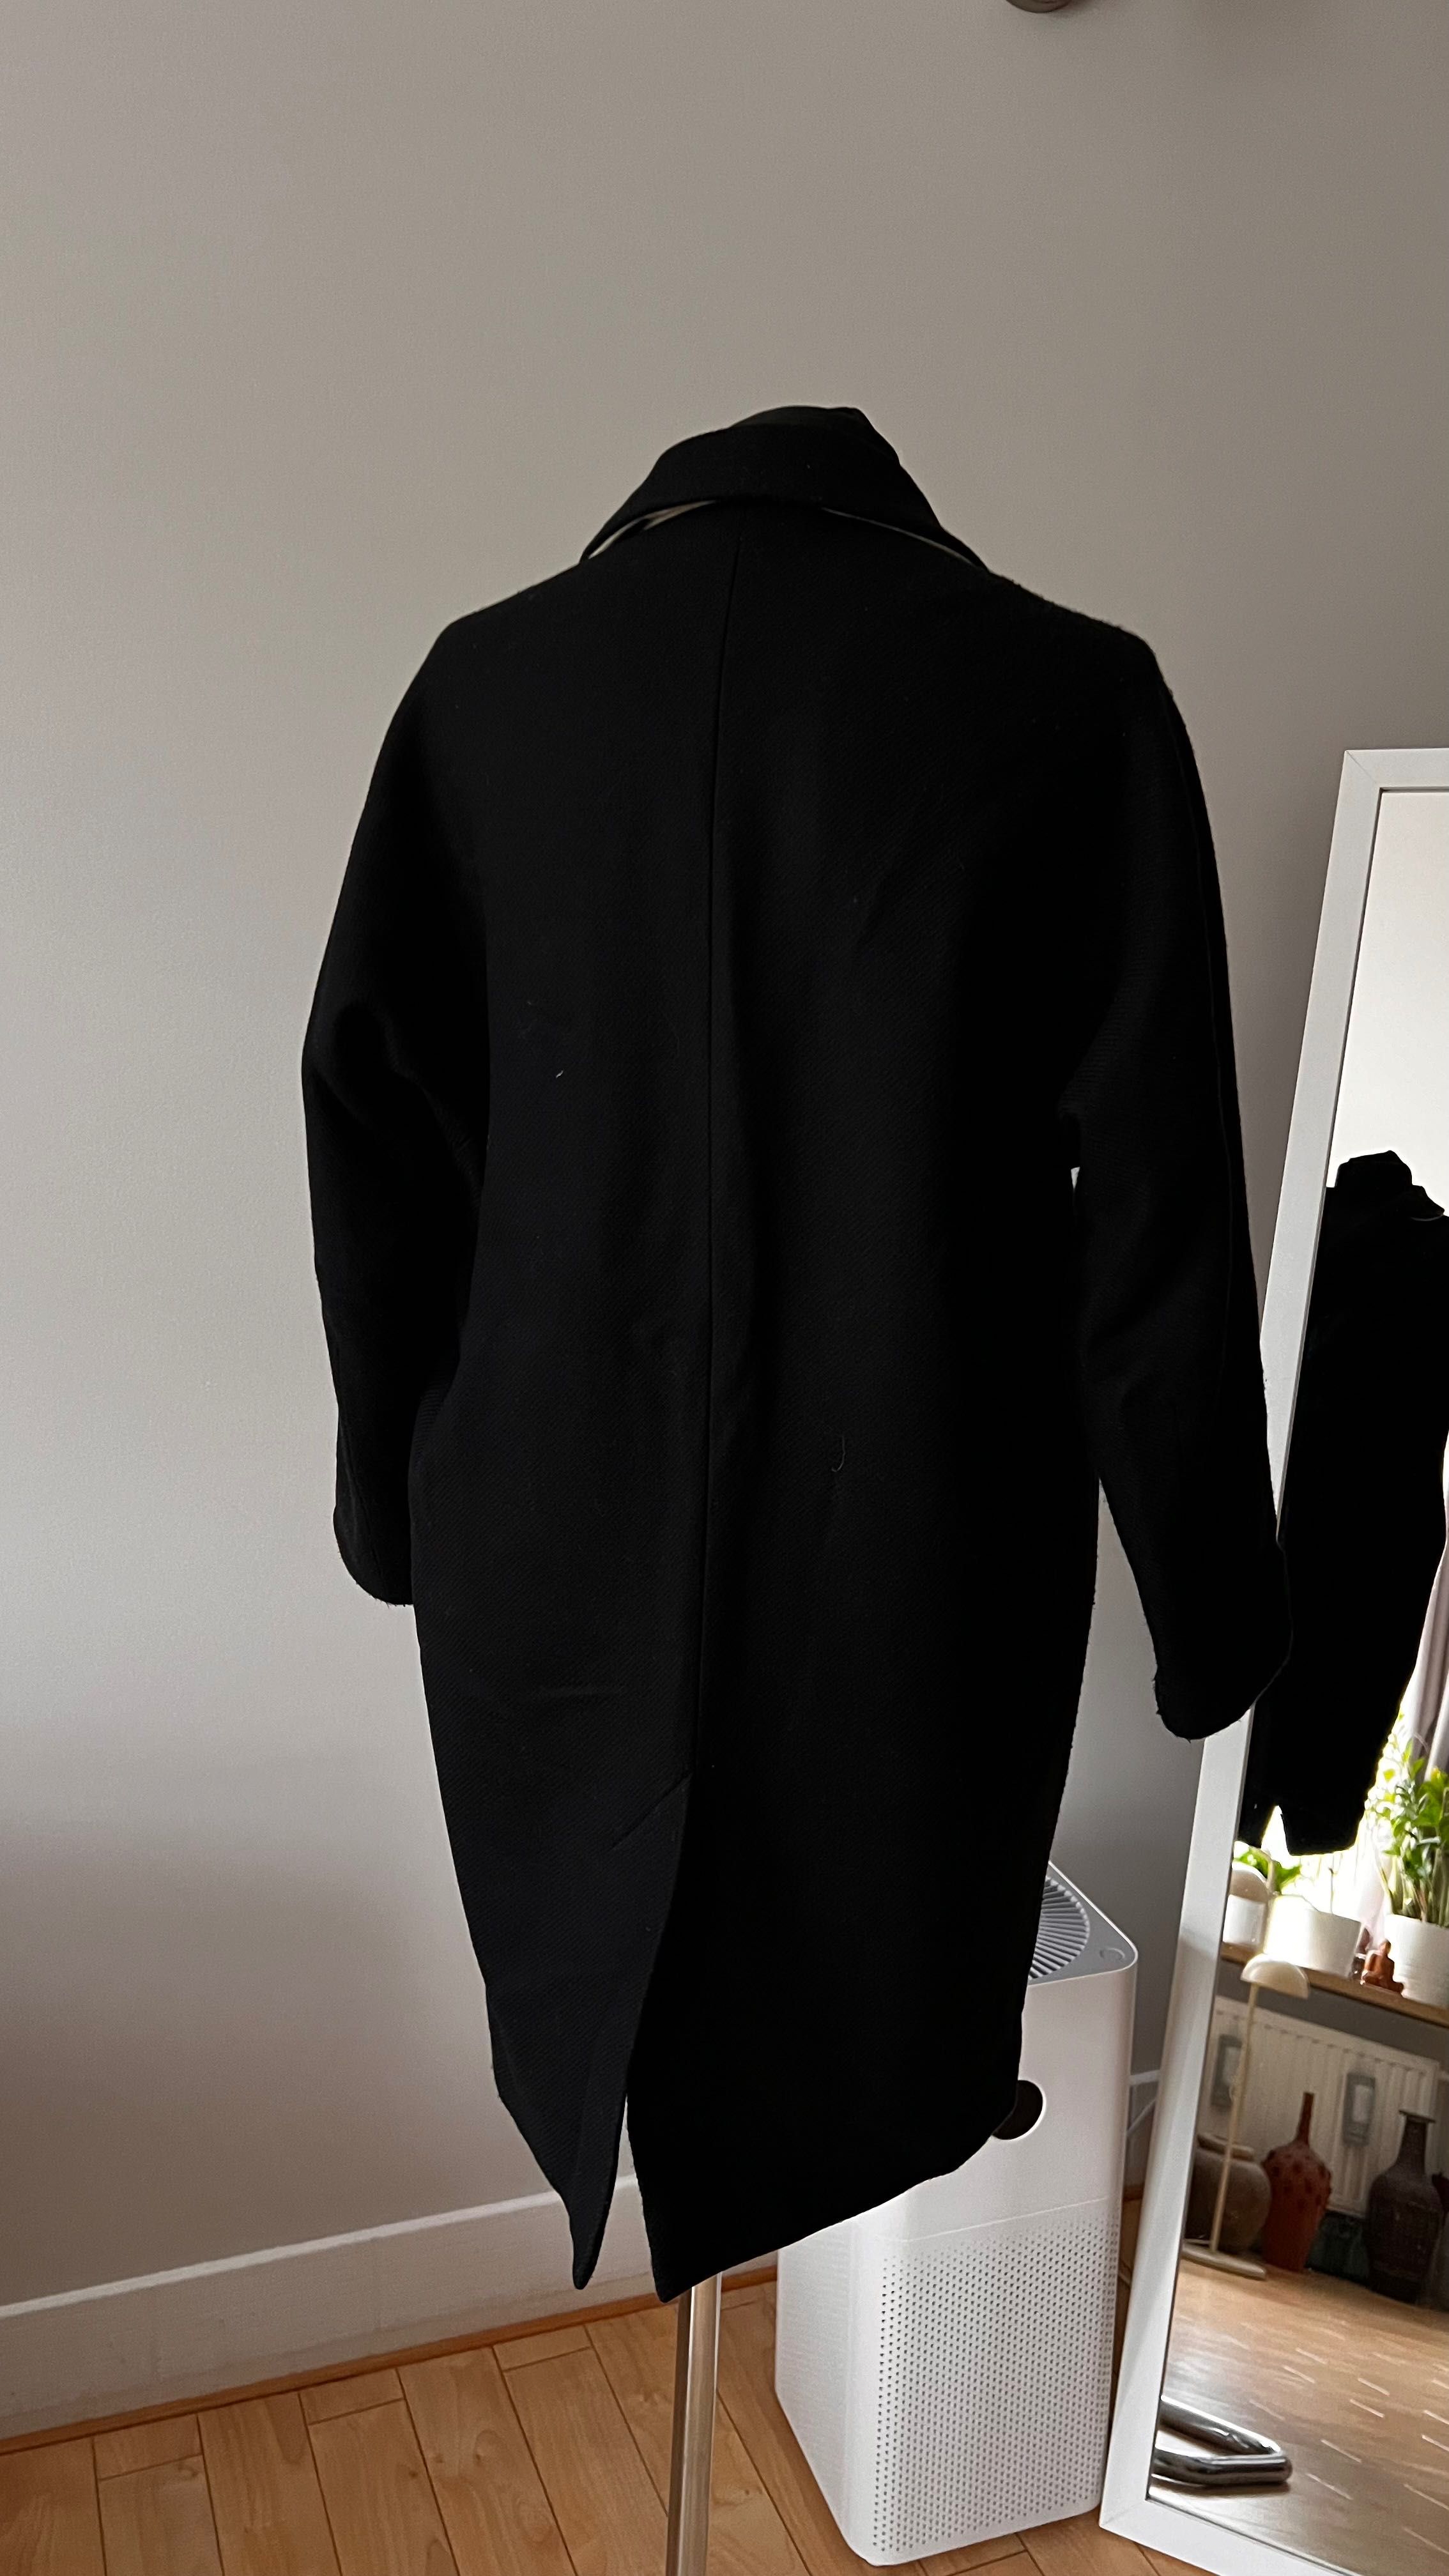 Wełniany płaszcz brytyjskiej marki Whistles XS 75% wełna czarny